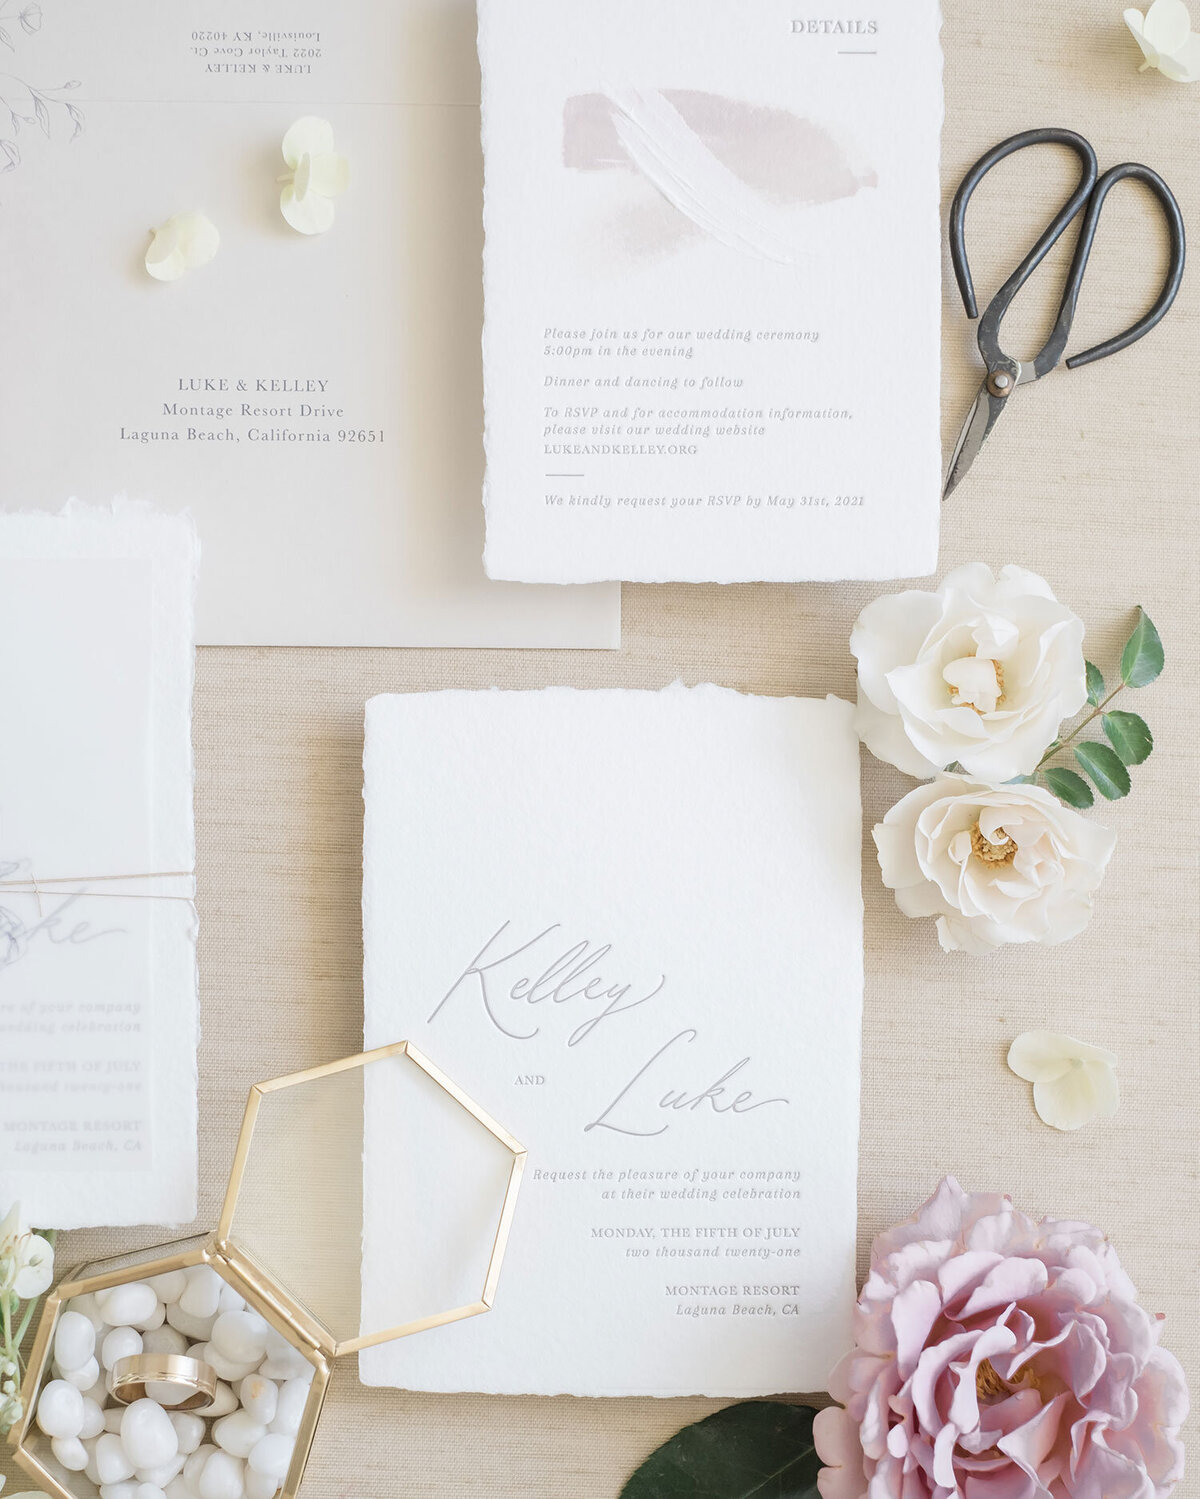 Dominique Alba Studio wedding invitations romantic minimalistic invitations letterpress handmade deckled edge page